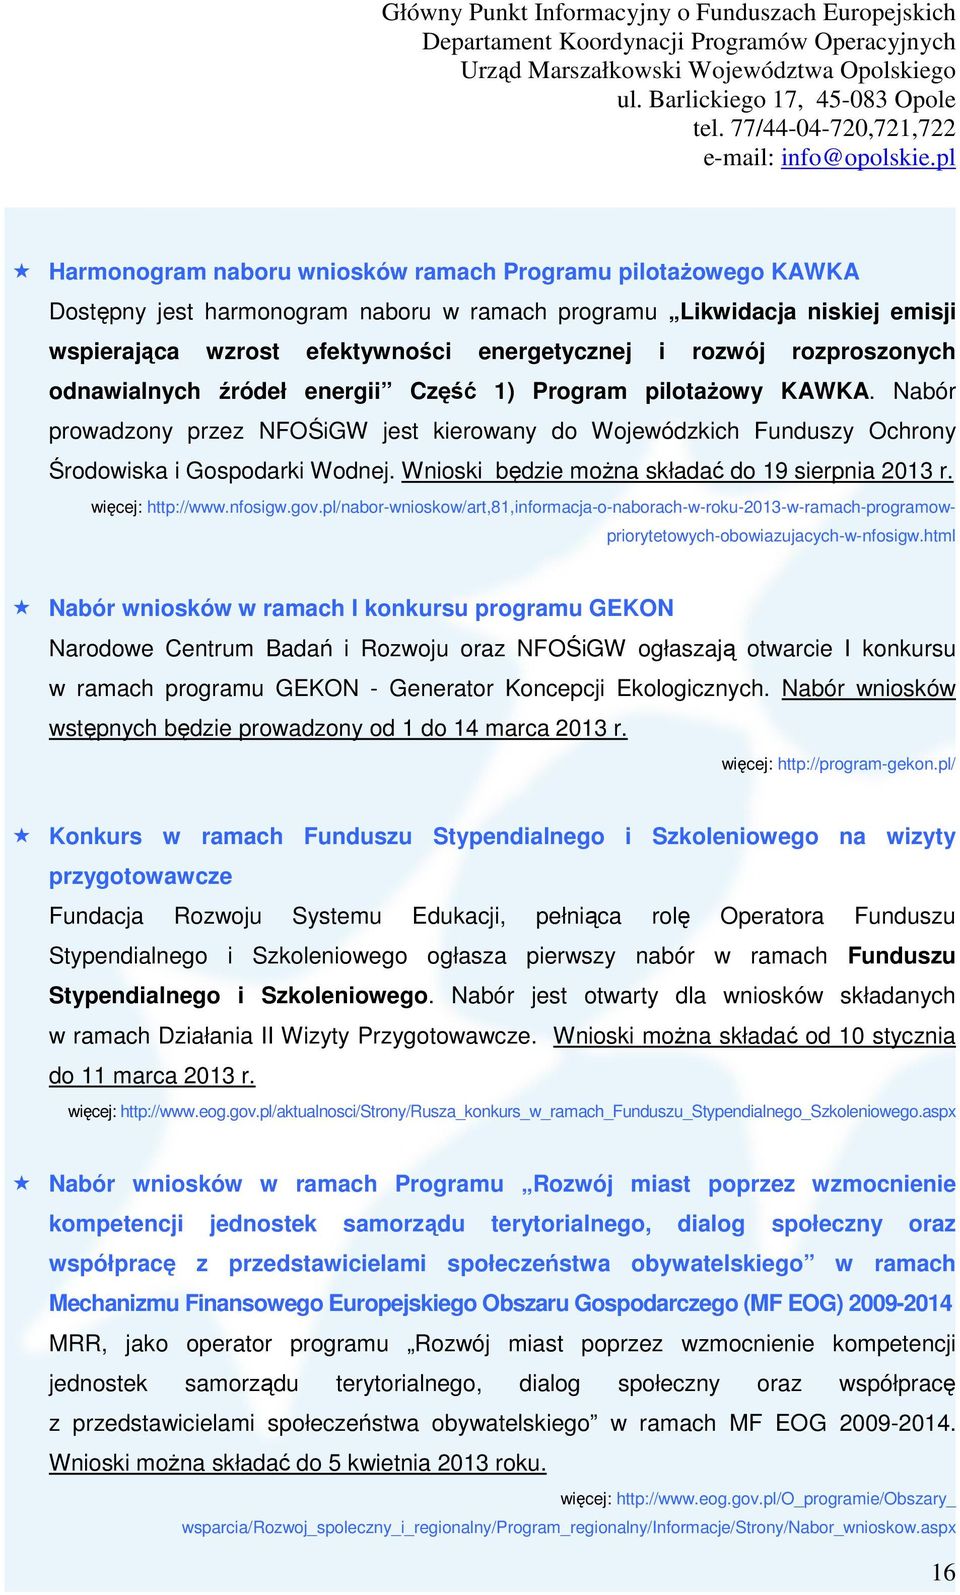 Wnioski będzie można składać do 19 sierpnia 2013 r. więcej: http://www.nfosigw.gov.pl/nabor-wnioskow/art,81,informacja-o-naborach-w-roku-2013-w-ramach-programowpriorytetowych-obowiazujacych-w-nfosigw.